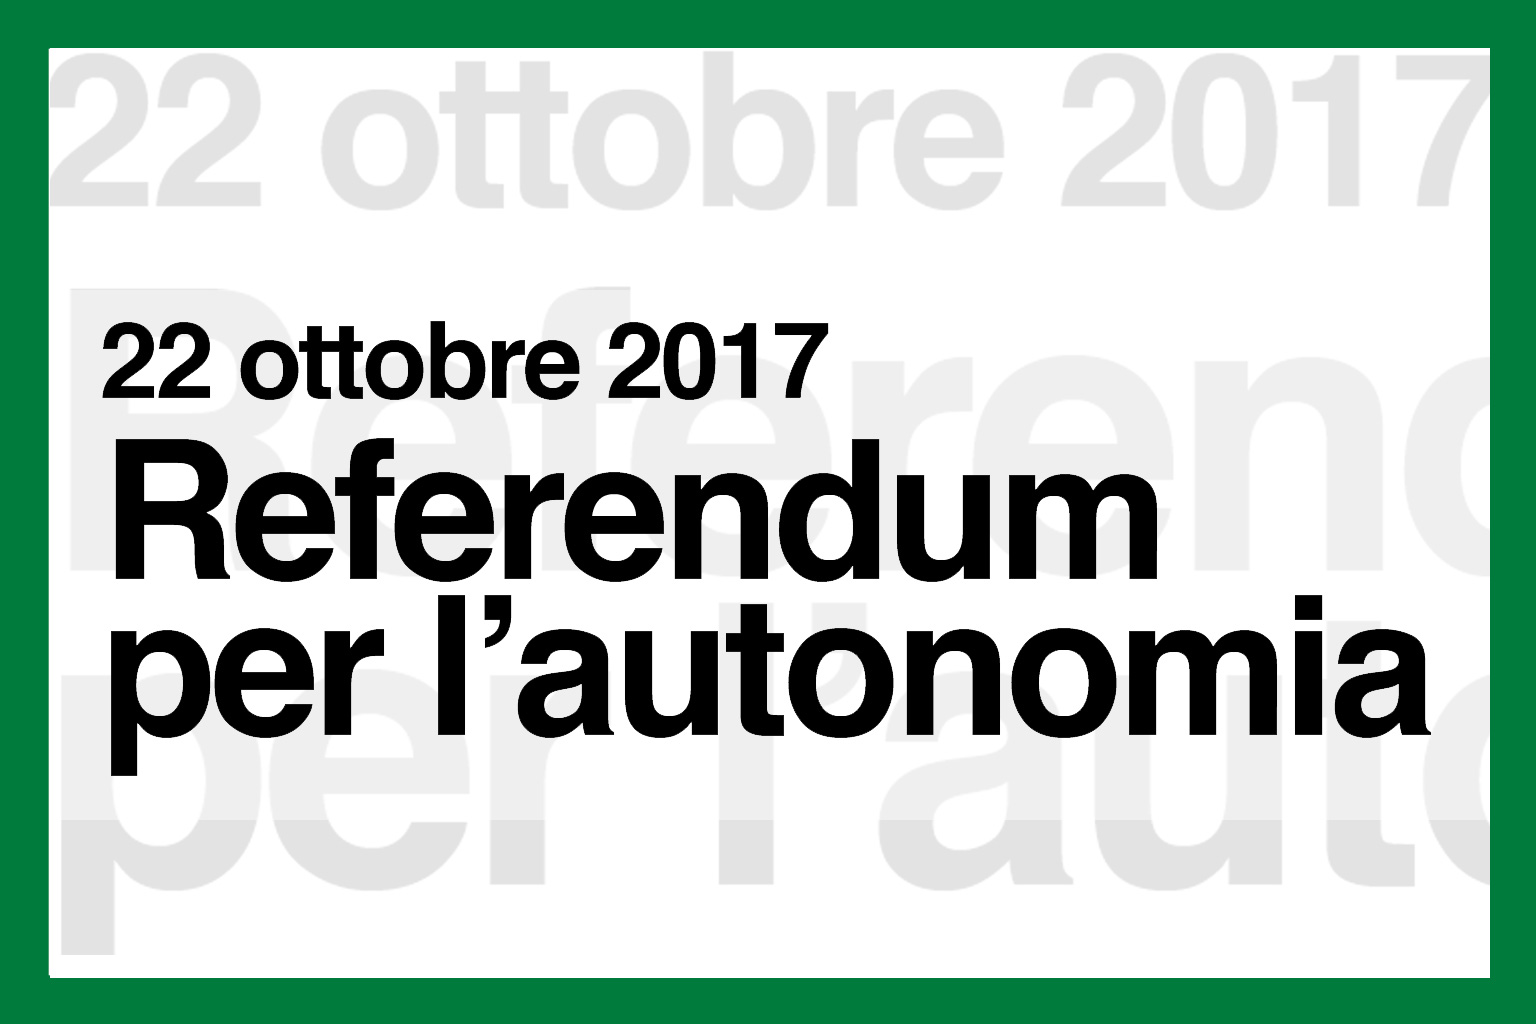 Immagine che raffigura Referendum consultivo Regione Lombardia